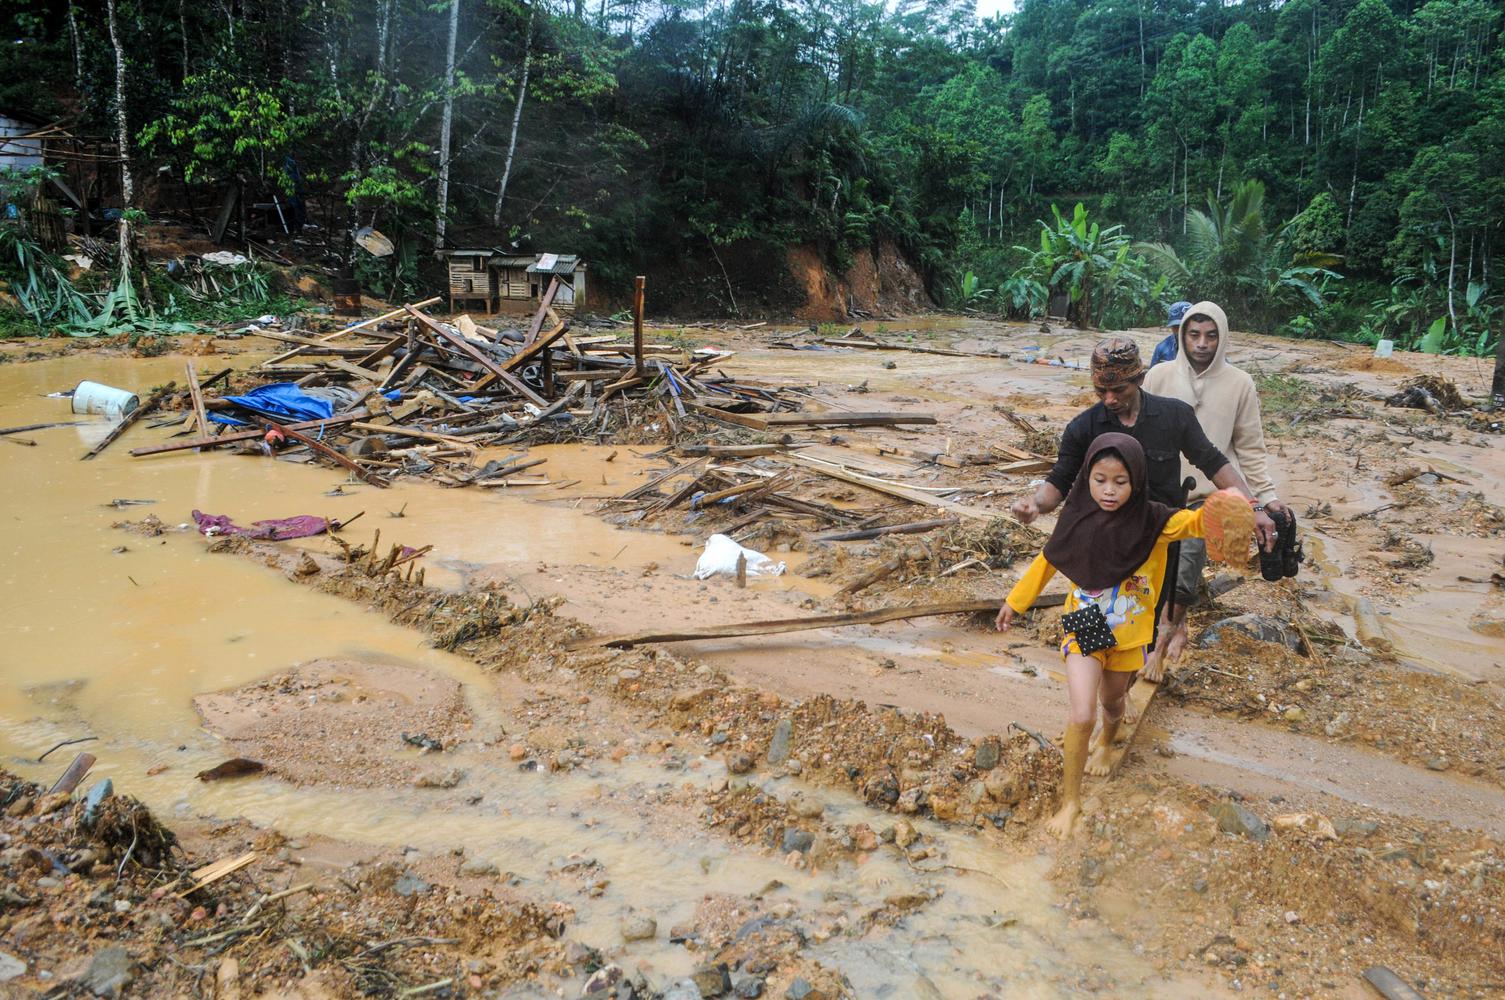 Sejumlah warga melintasi pemukiman yang rusak terdampak banjir bandang di Kampung Panggeleseran, Desa Citorek Kidul, Lebak, Banten, Minggu (8/12/2019). Pihak BPBD Kabupaten Lebak mencatat akibat hujan deras yang turun sejak Jumat (6/12) malam sebanyak 12 titik jalan kabupaten menuju Citorek tertutup material longsor, 3 jembatan antar desa terputus, dan 197 rumah rusak terendam banjir di 6 Desa dari 2 Kecamatan yaitu Cibeber dan Citorek.